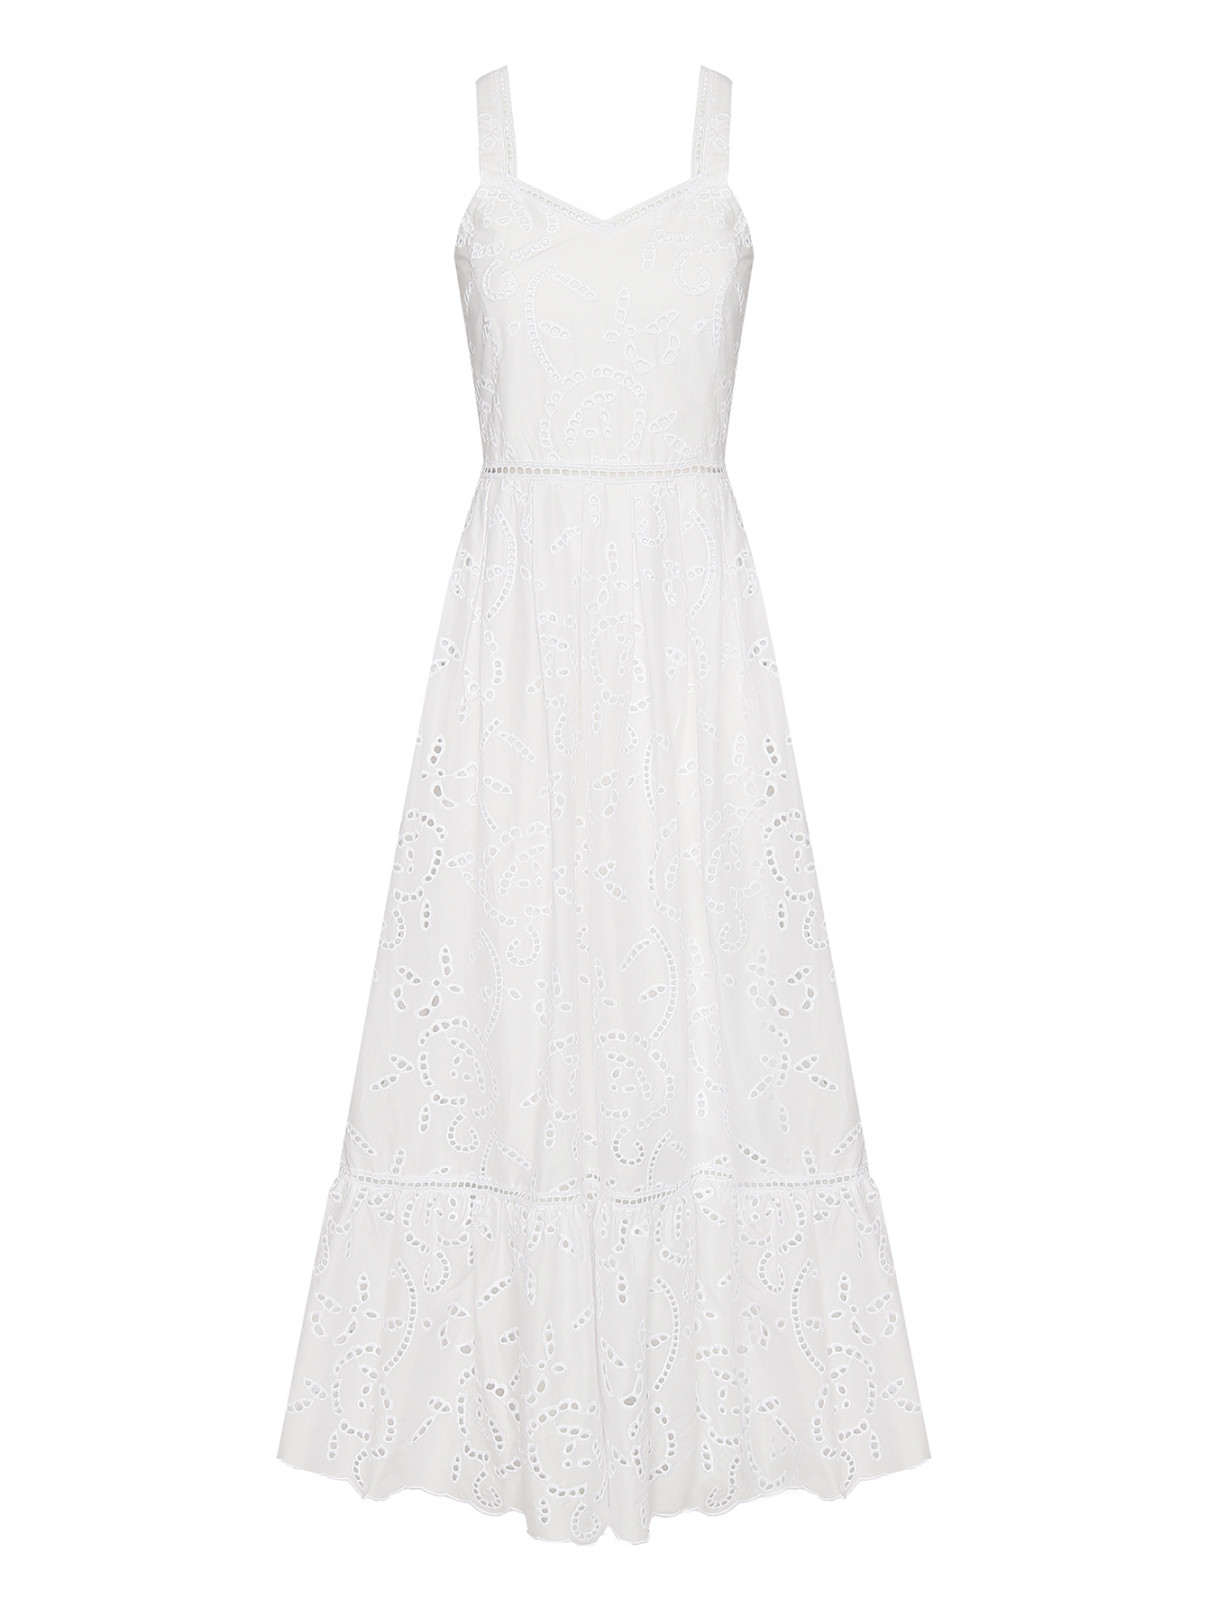 Платье-сарафан из хлопка с вышивкой ришелье Max&Co  –  Общий вид  – Цвет:  Белый